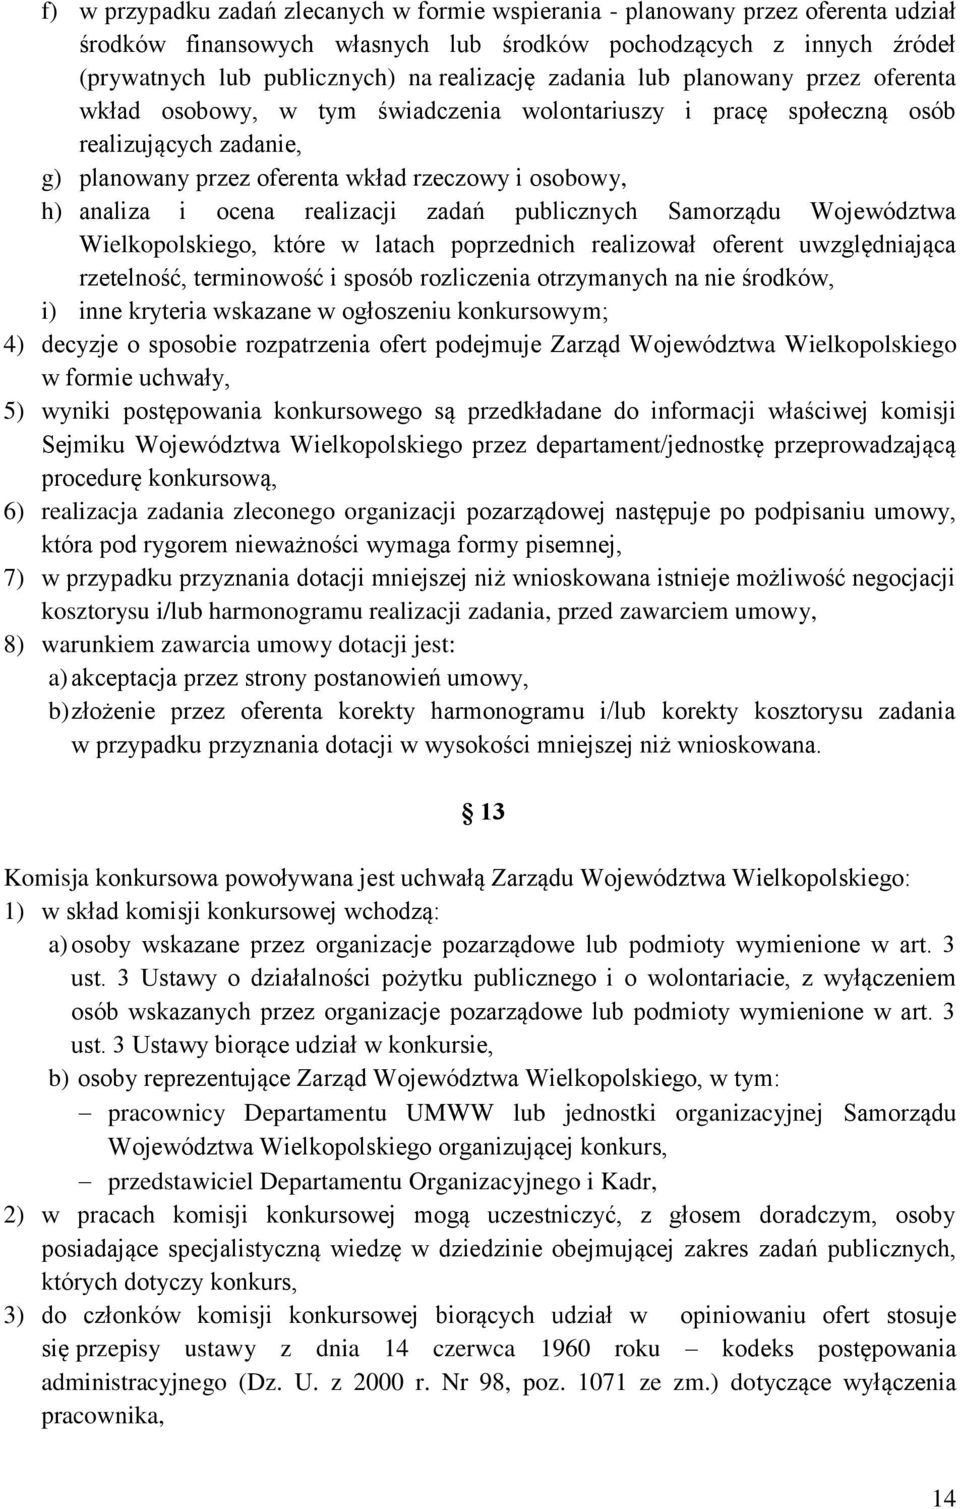 ocena realizacji zadań publicznych Samorządu Województwa Wielkopolskiego, które w latach poprzednich realizował oferent uwzględniająca rzetelność, terminowość i sposób rozliczenia otrzymanych na nie